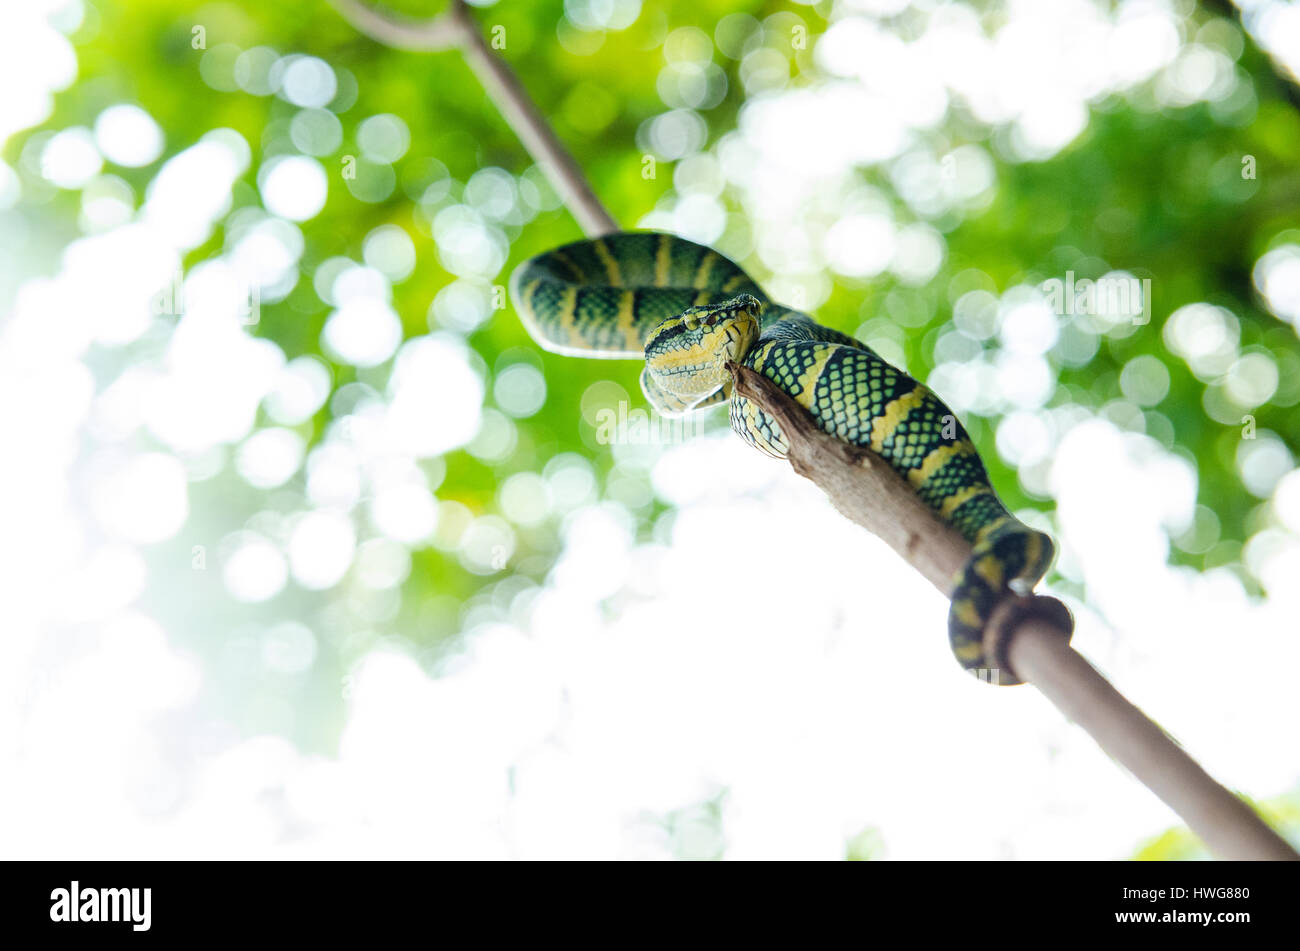 Tropidolaemus wagleri serpent venimeux de l'Asie à rayures jaune vert Banque D'Images